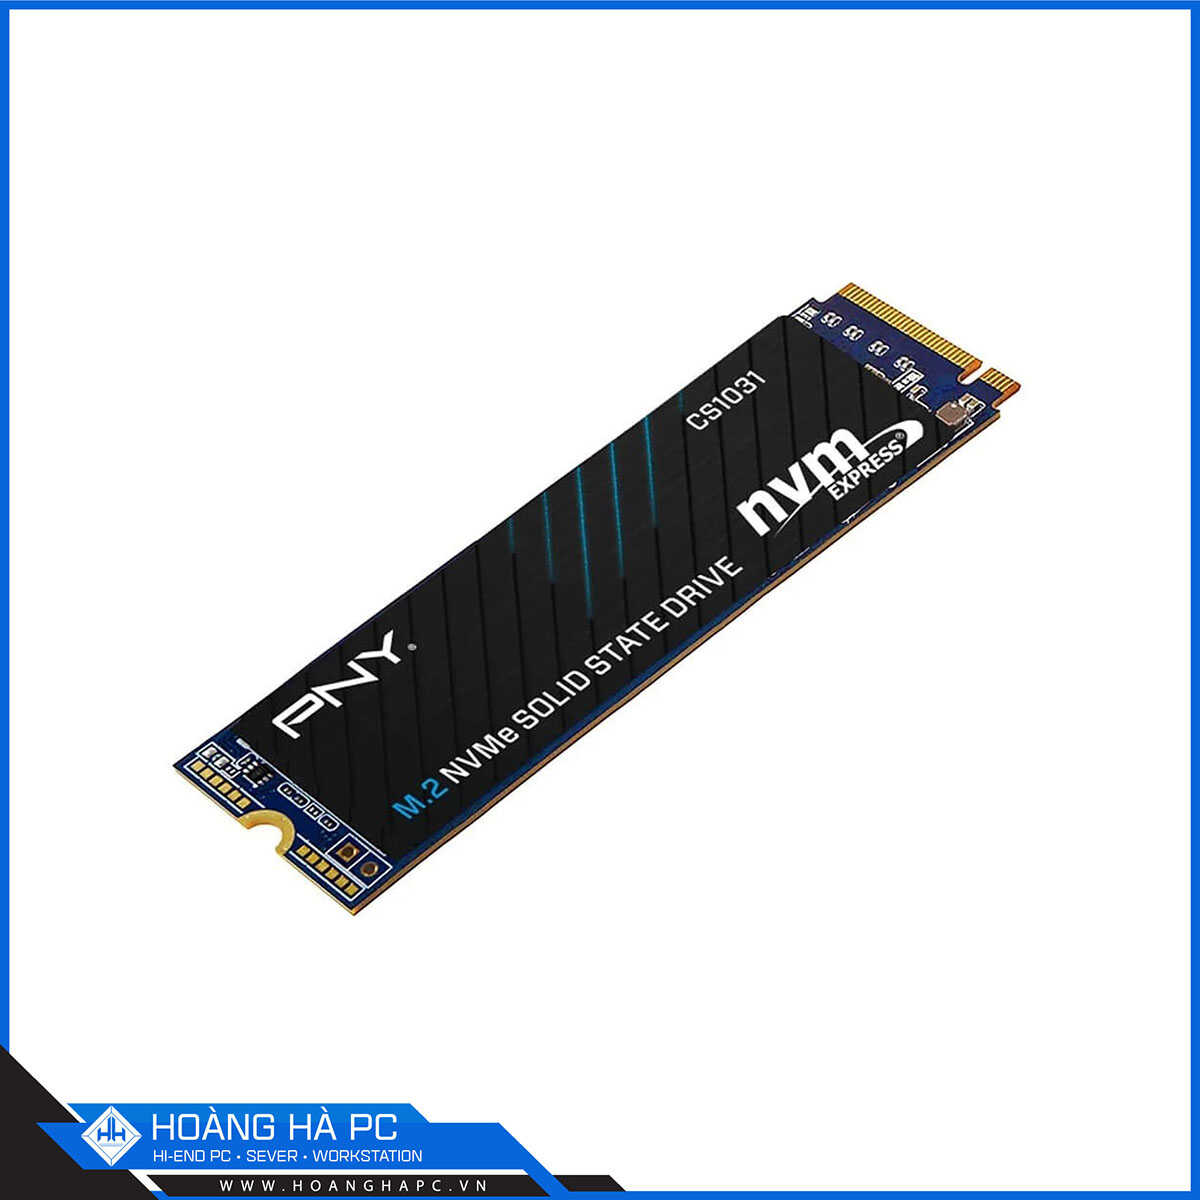 Ổ cứng SSD PNY CS1031 256GB M.2 2280 PCIe NVMe Gen 3x4 (Đọc 1700MB/s - Ghi 1100MB/s)